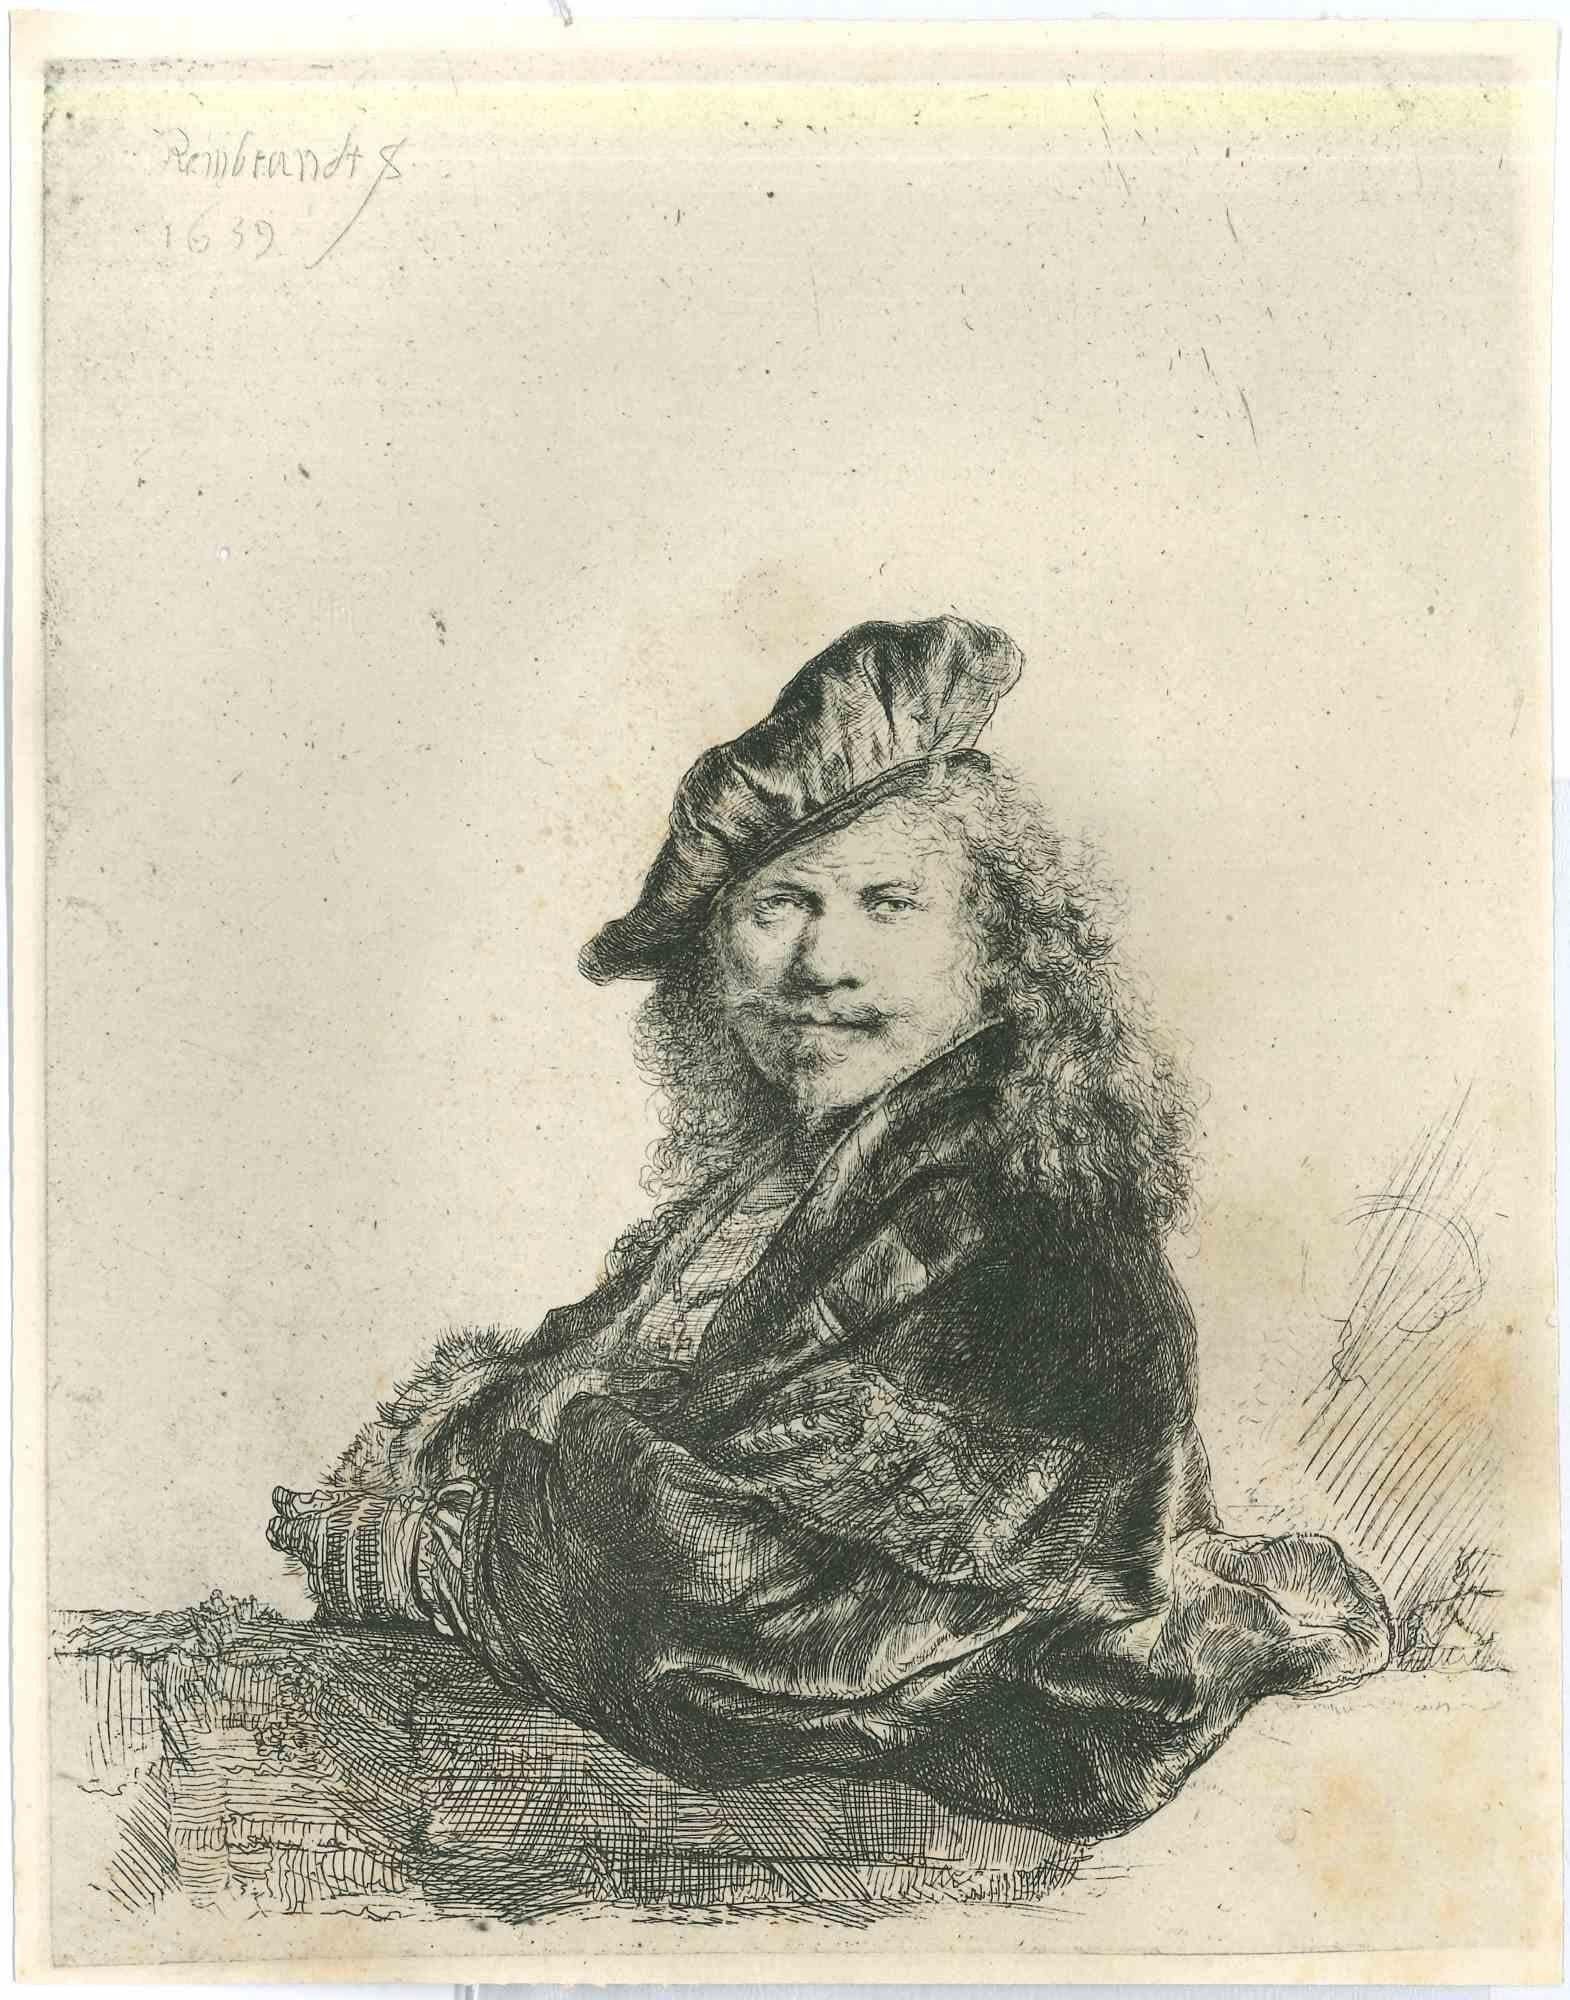 (After) Rembrandt van Rijn  Portrait Print - Self Portrait of Rembrandt - Etching after Rembrandt - 19th century